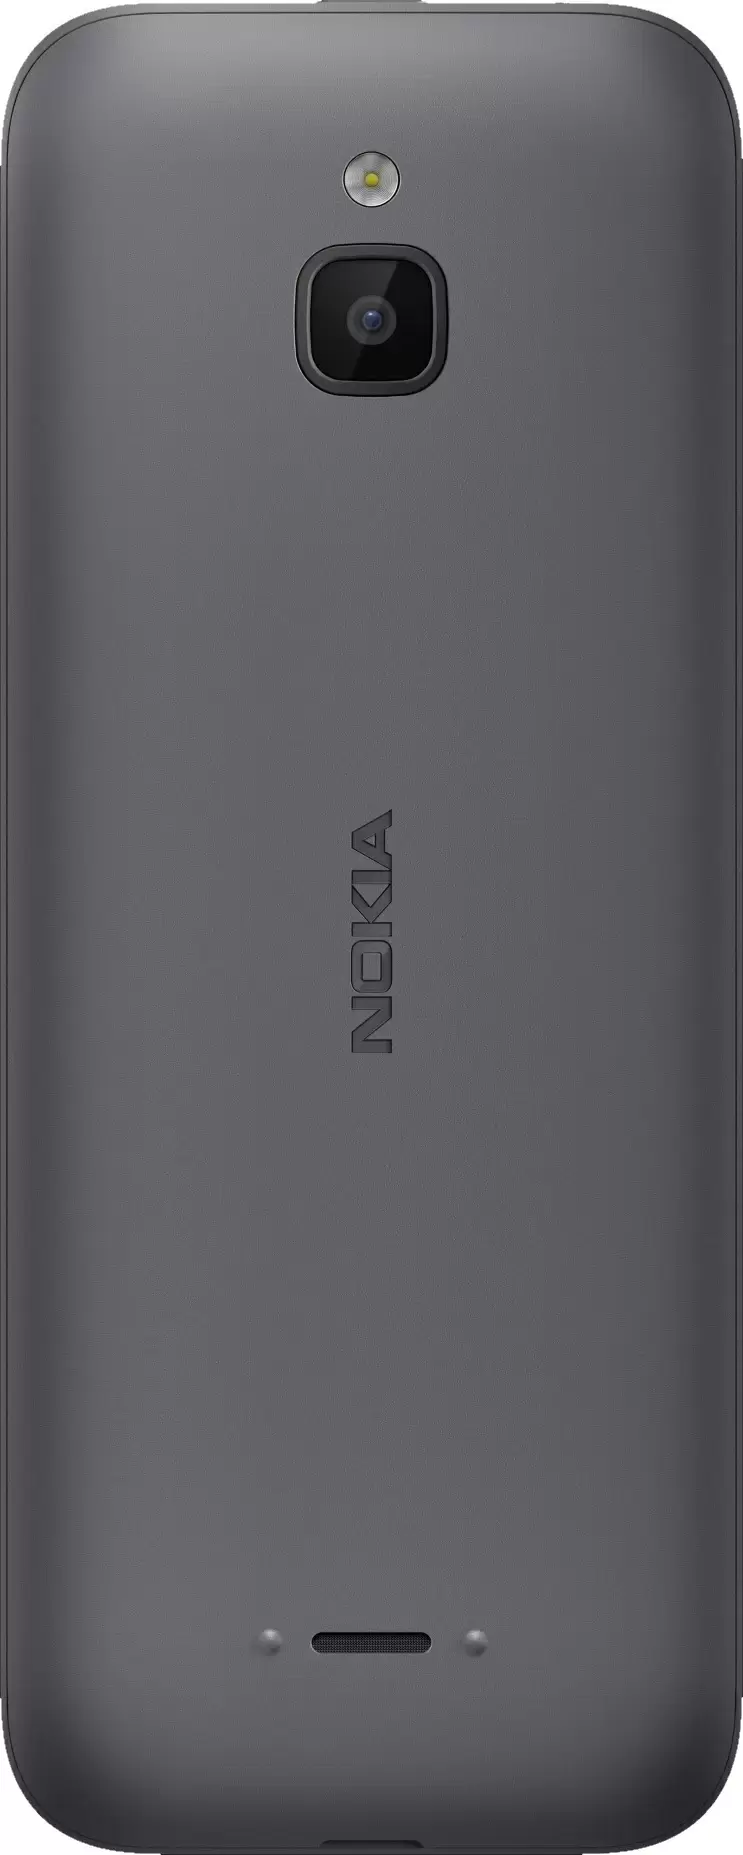 Telefon mobil Nokia 6300 Duos 4G, gri